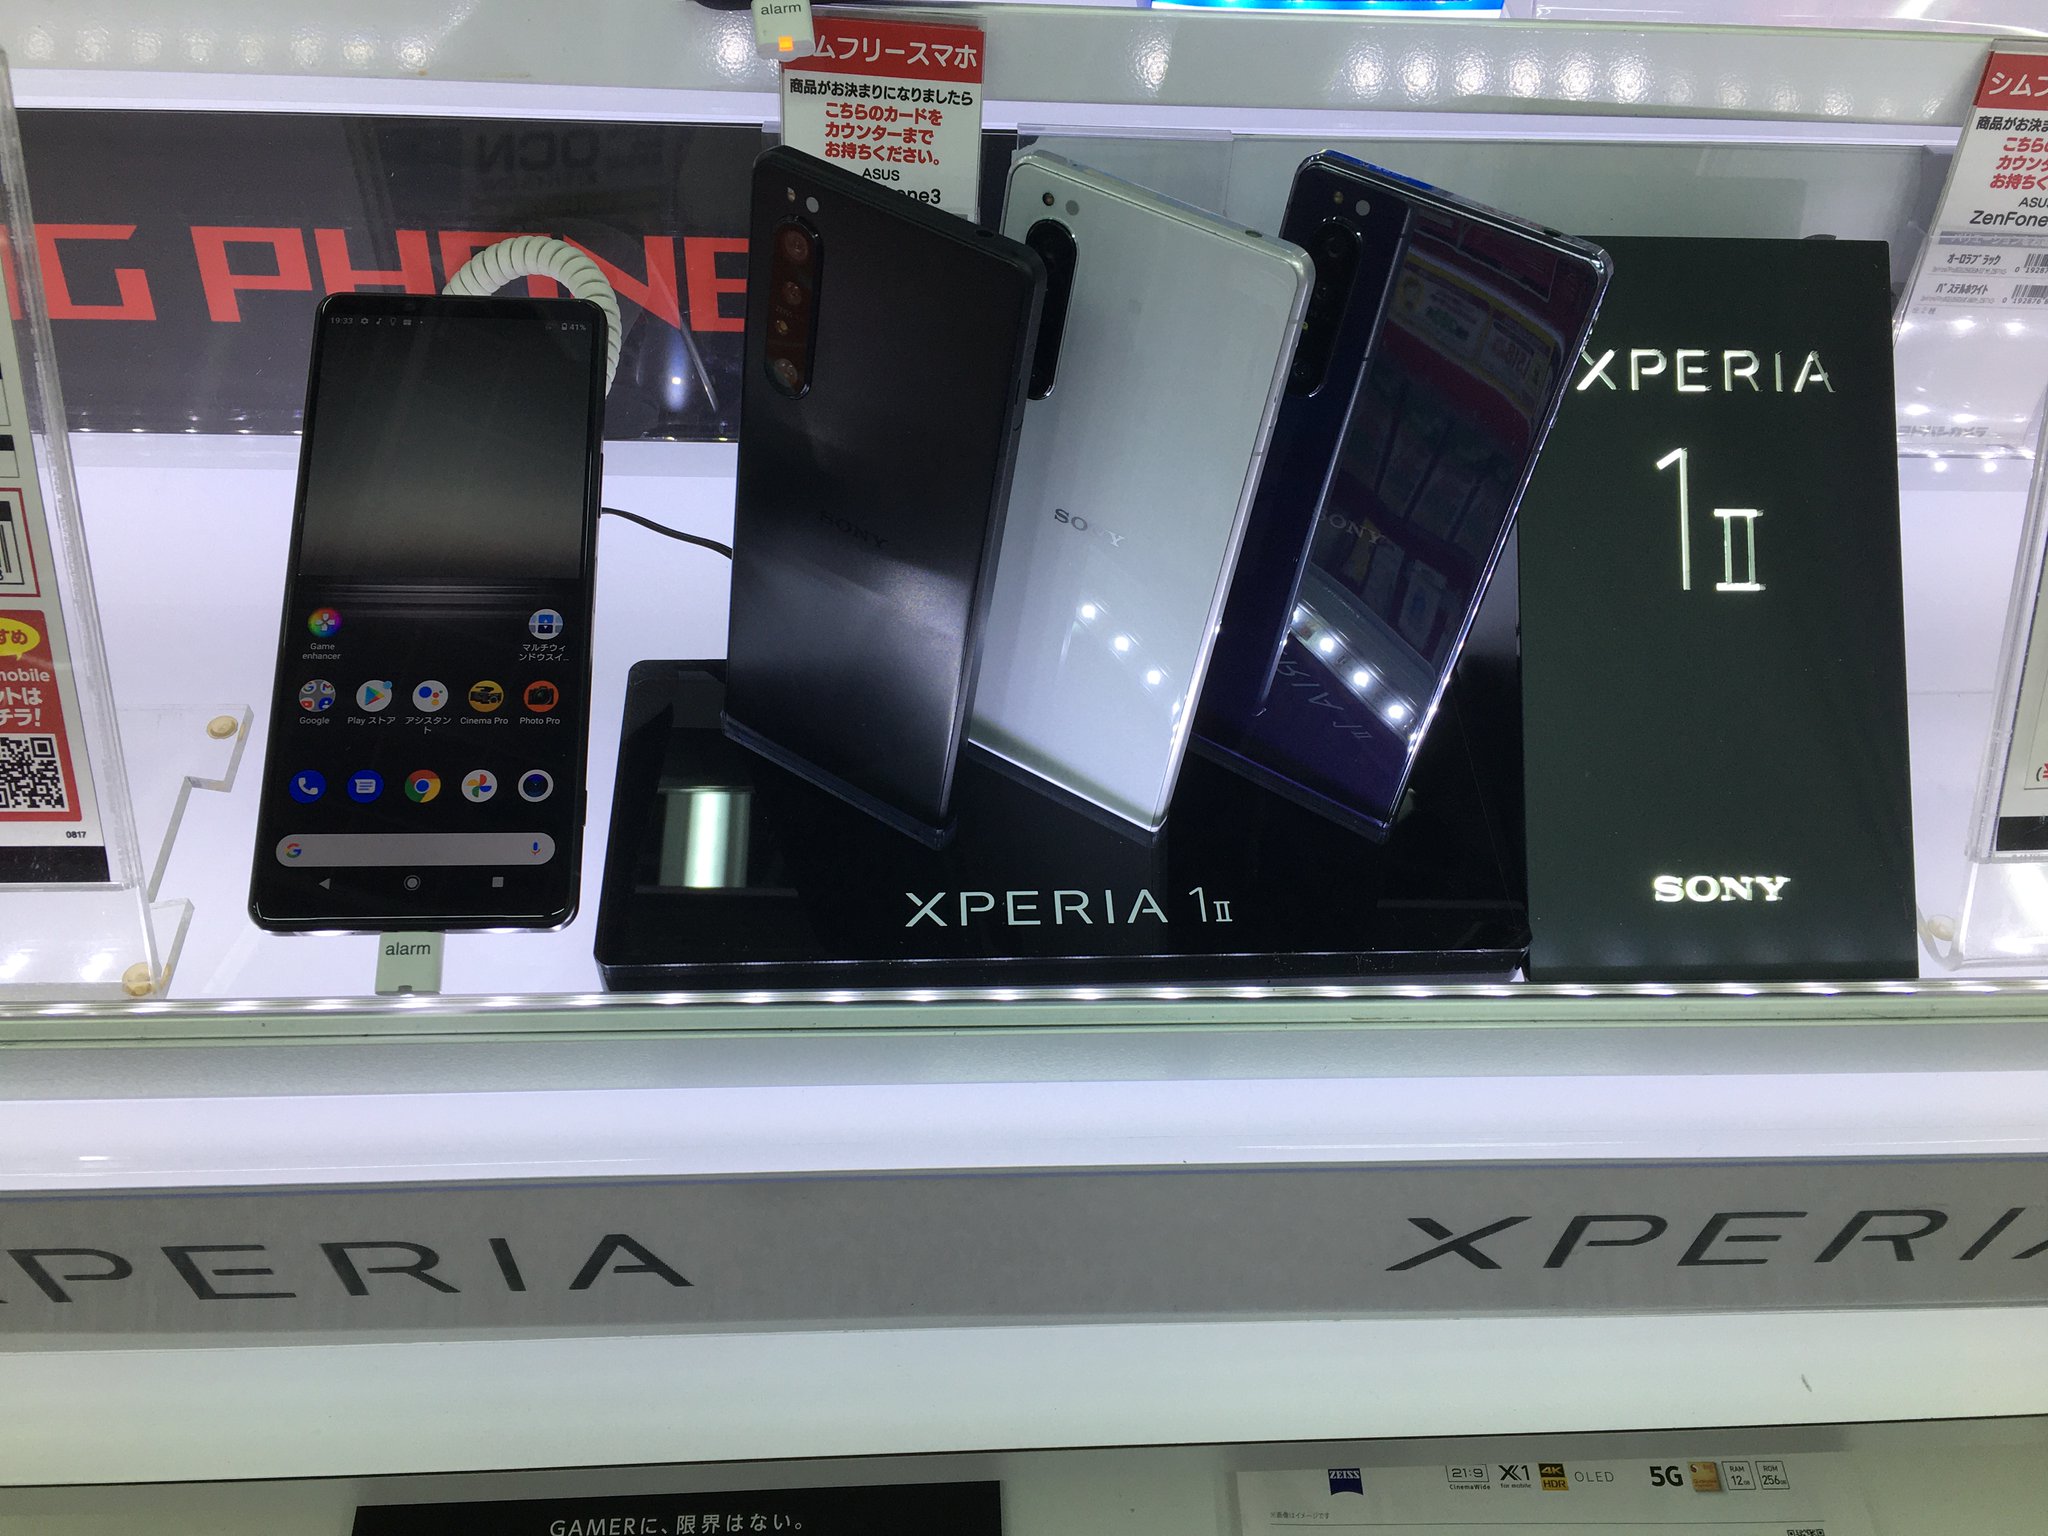 ヨドバシカメラ 札幌店 on Twitter: "【Xperia SIMフリーモデル取り扱い開始 ️】 1階携帯電話機コーナーでは、ソニーの